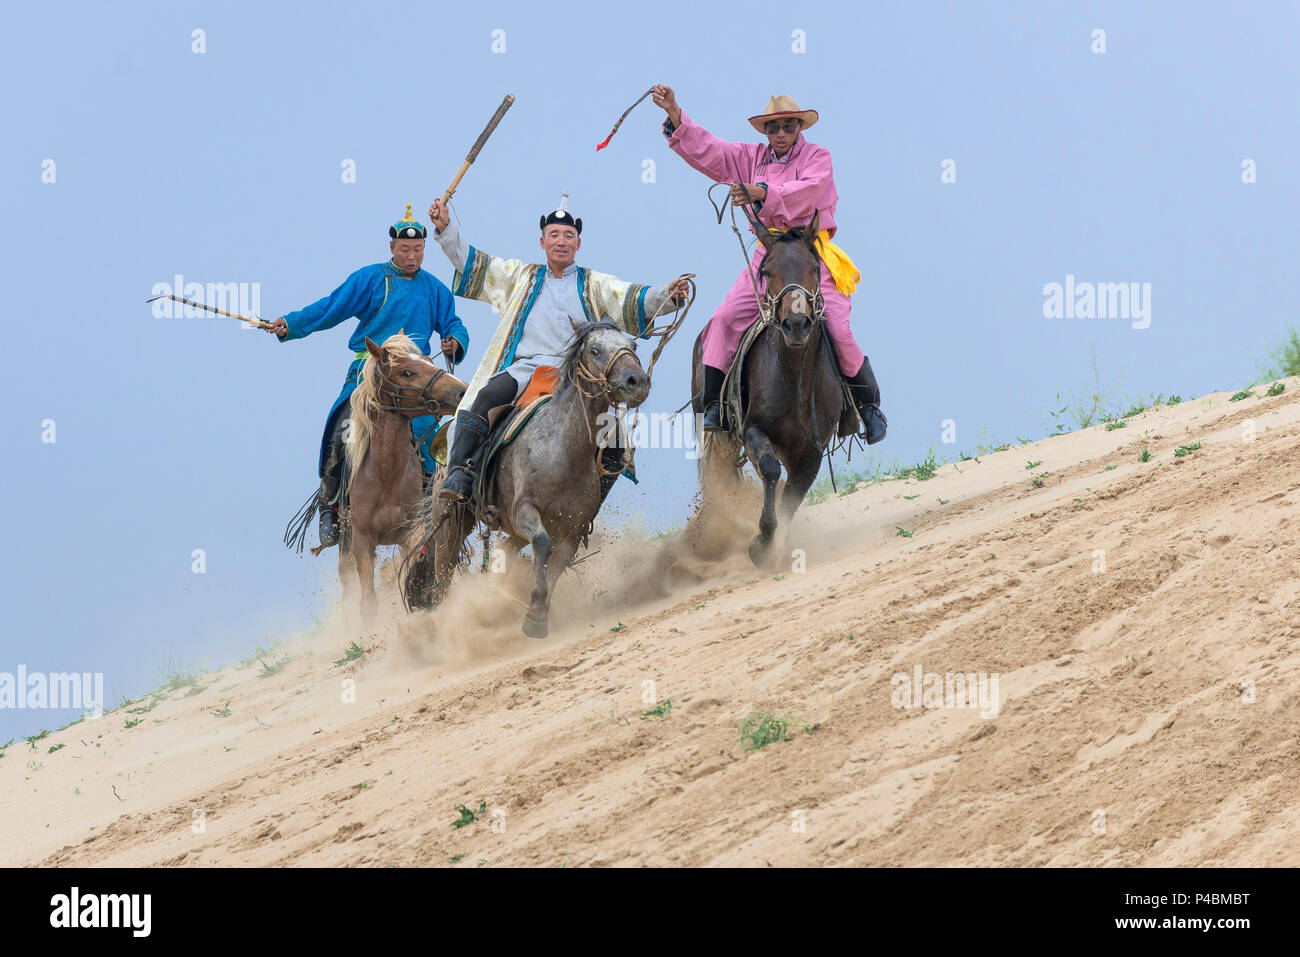 Reiter gekleidet mit Seil und Pole Urga, während Herding Kamele entlang Sanddünen, Xilinhot, der Inneren Mongolei, China Stockfoto